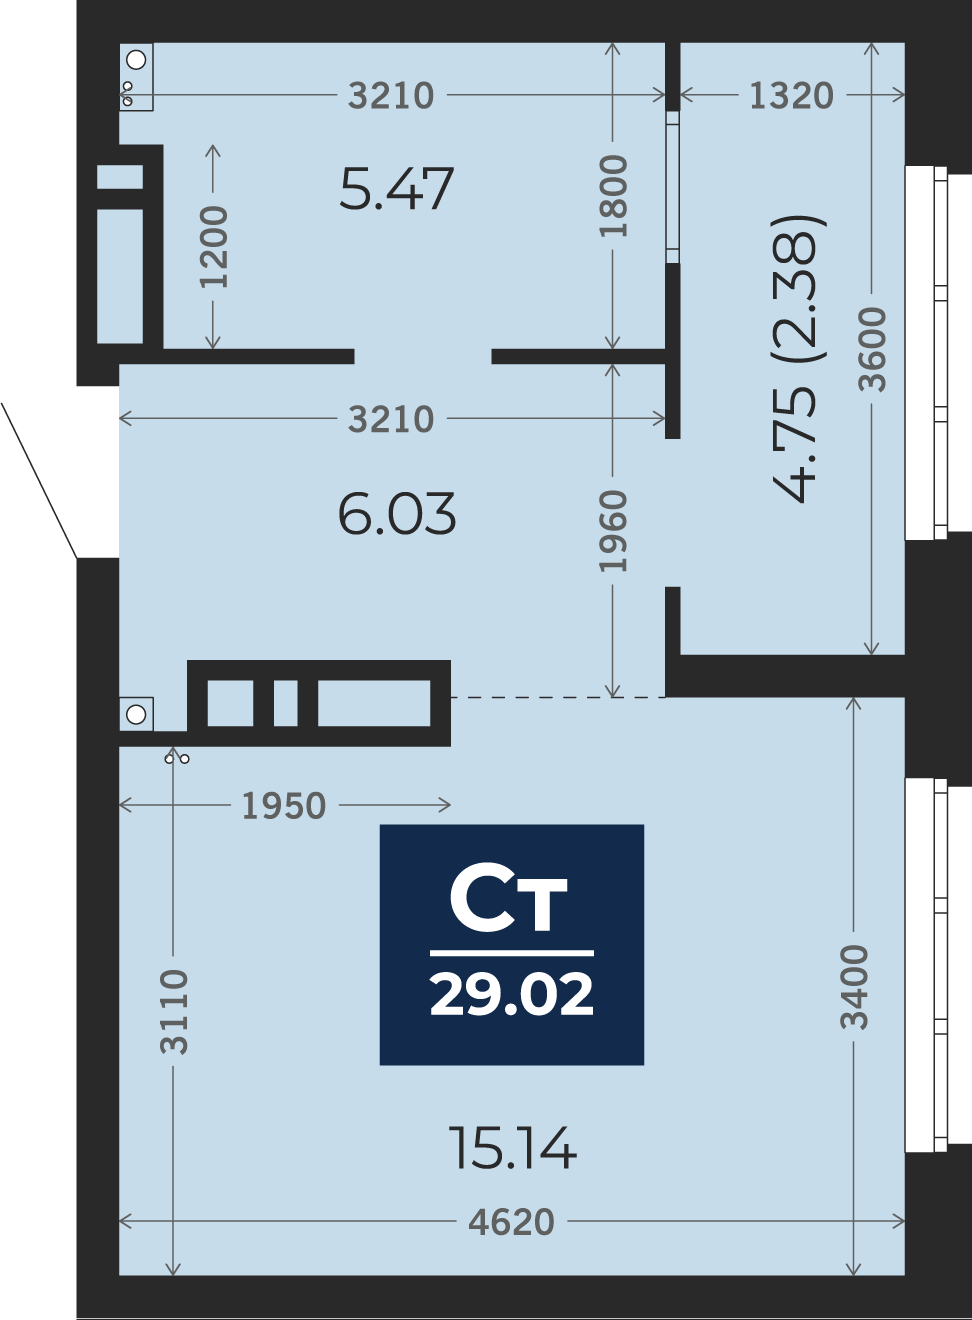 Квартира № 424, Студия, 29.02 кв. м, 19 этаж